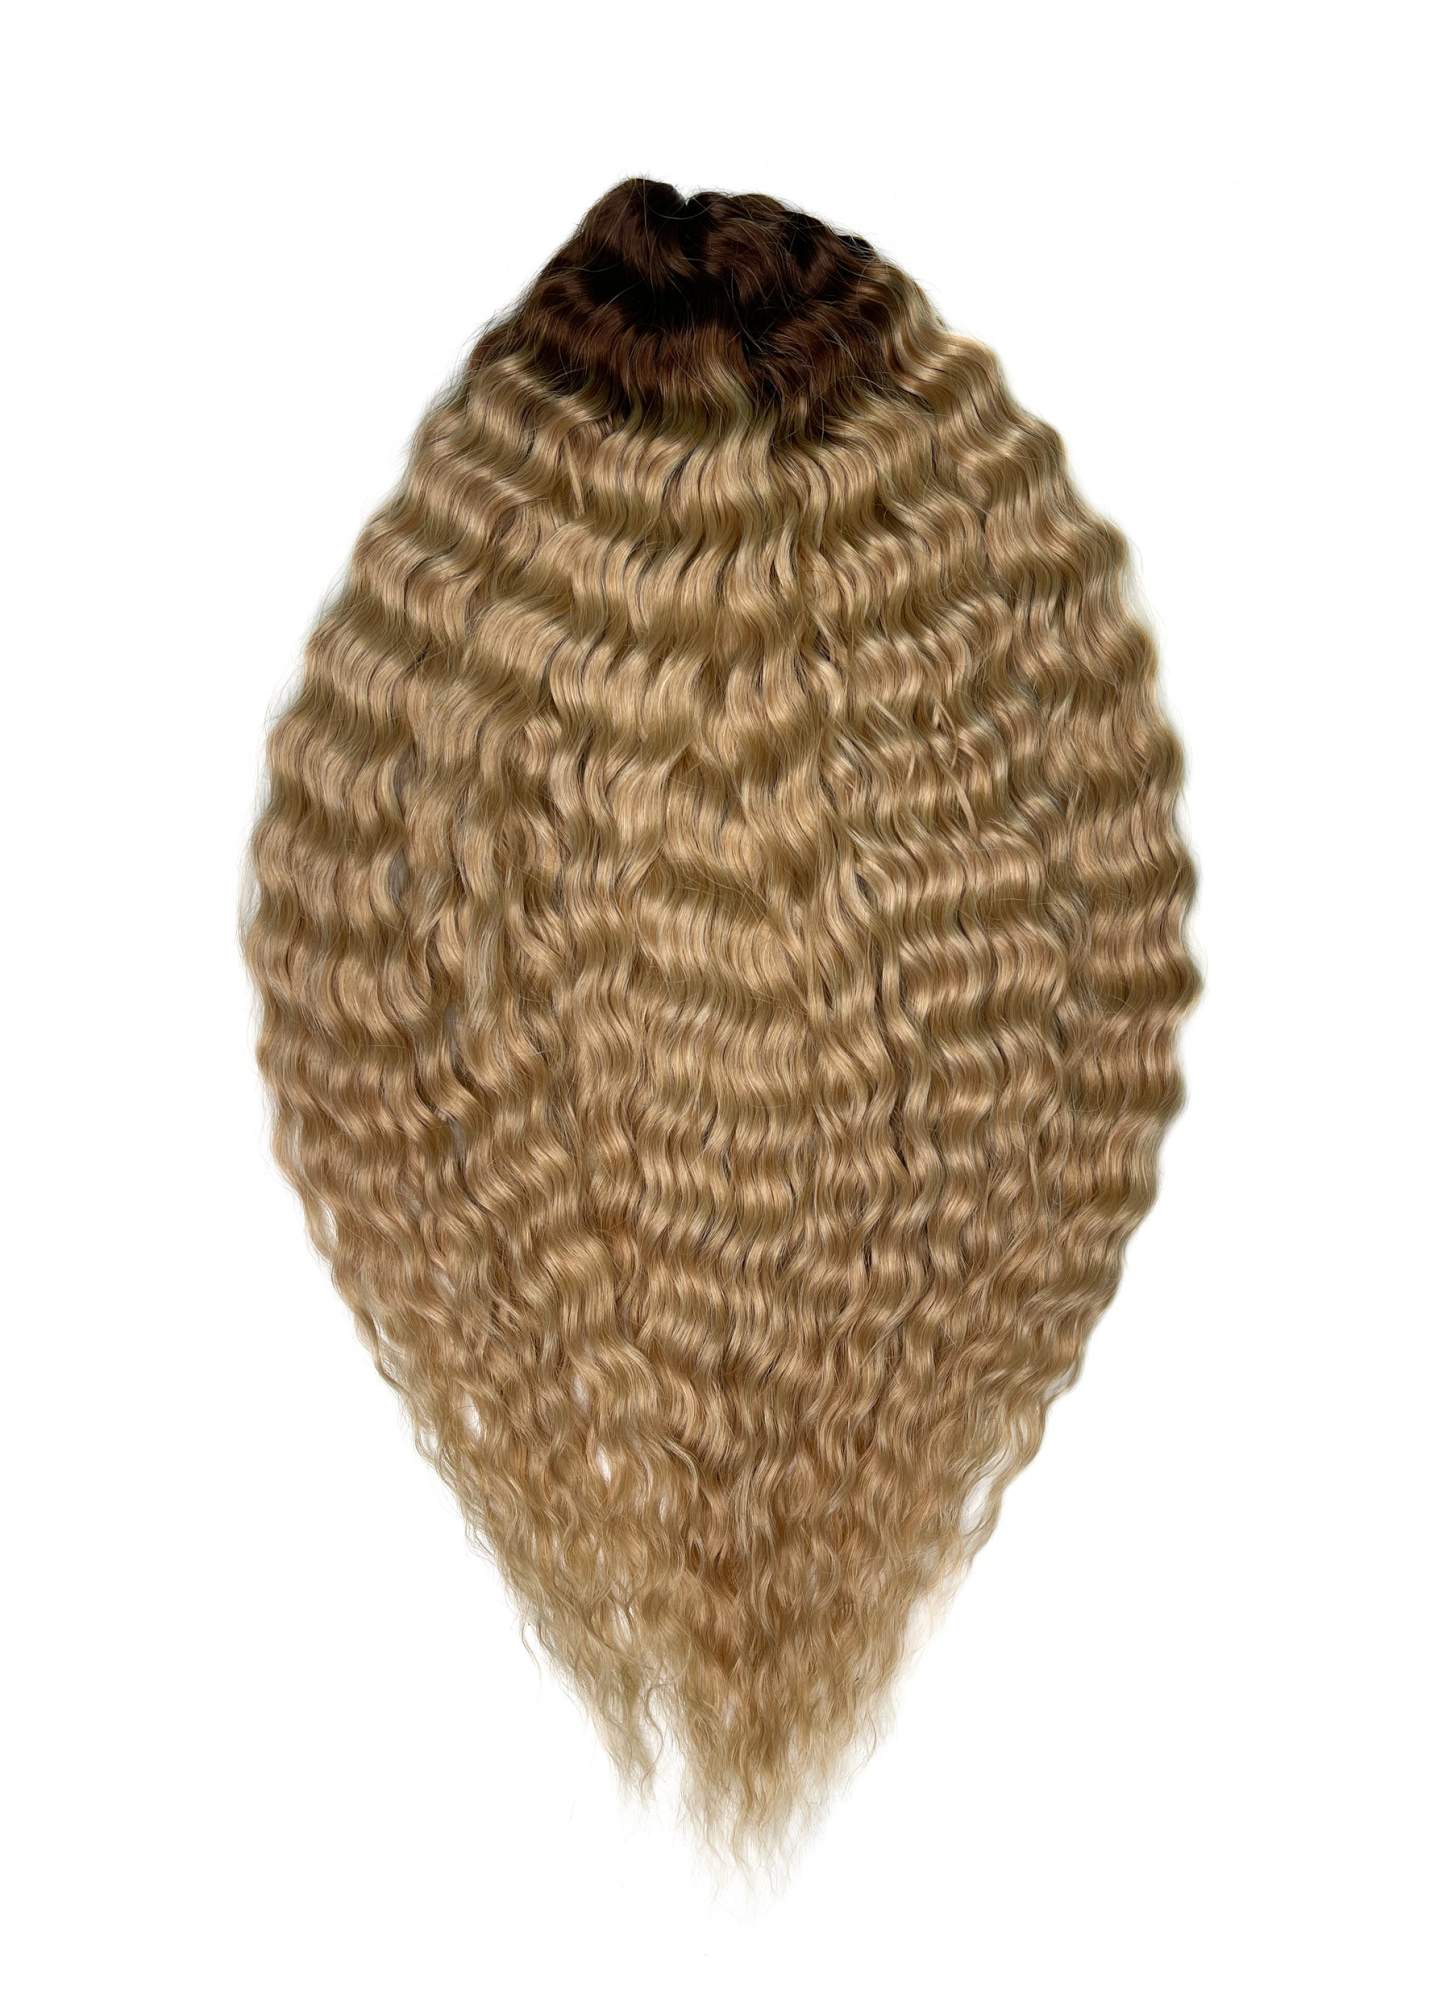 Афрокудри для плетения волос Ariel цвет TT-linen 55 русый длина 55см вес 300г афрокудри для плетения волос ariel ариэль billie зеленый 60см 300г